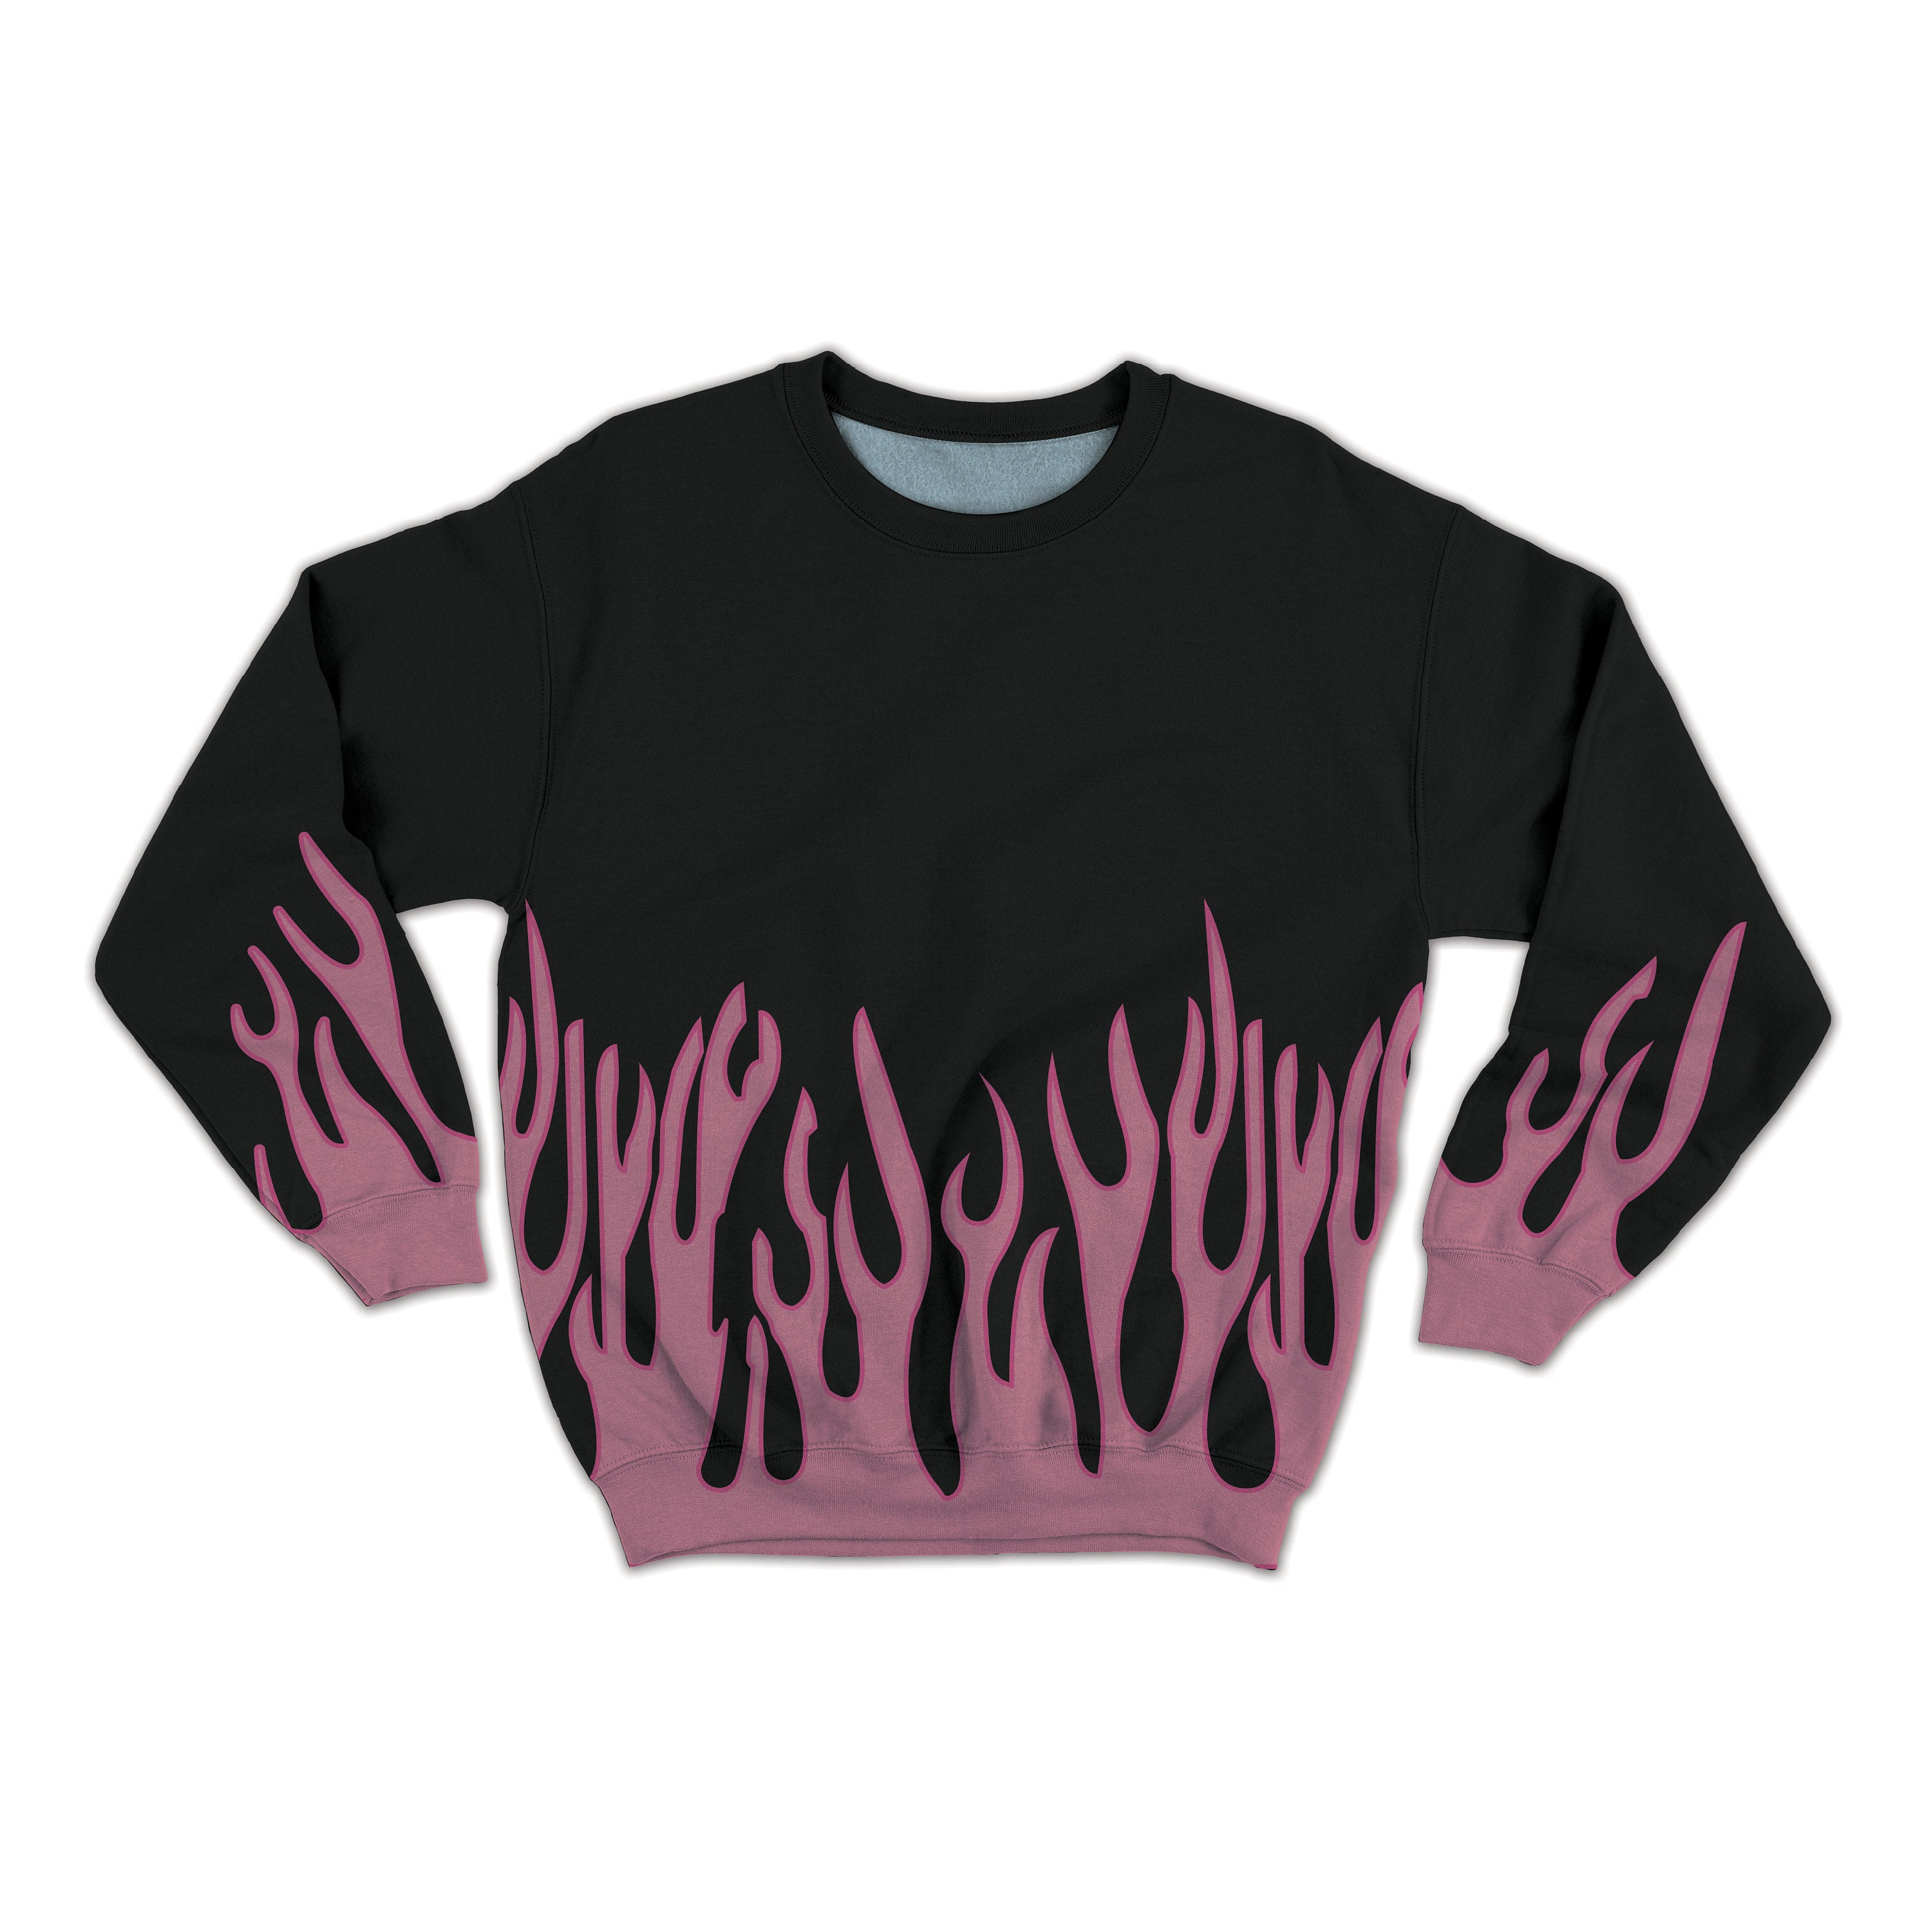 Flame Sweatshirt in Pink & Black - Etsy